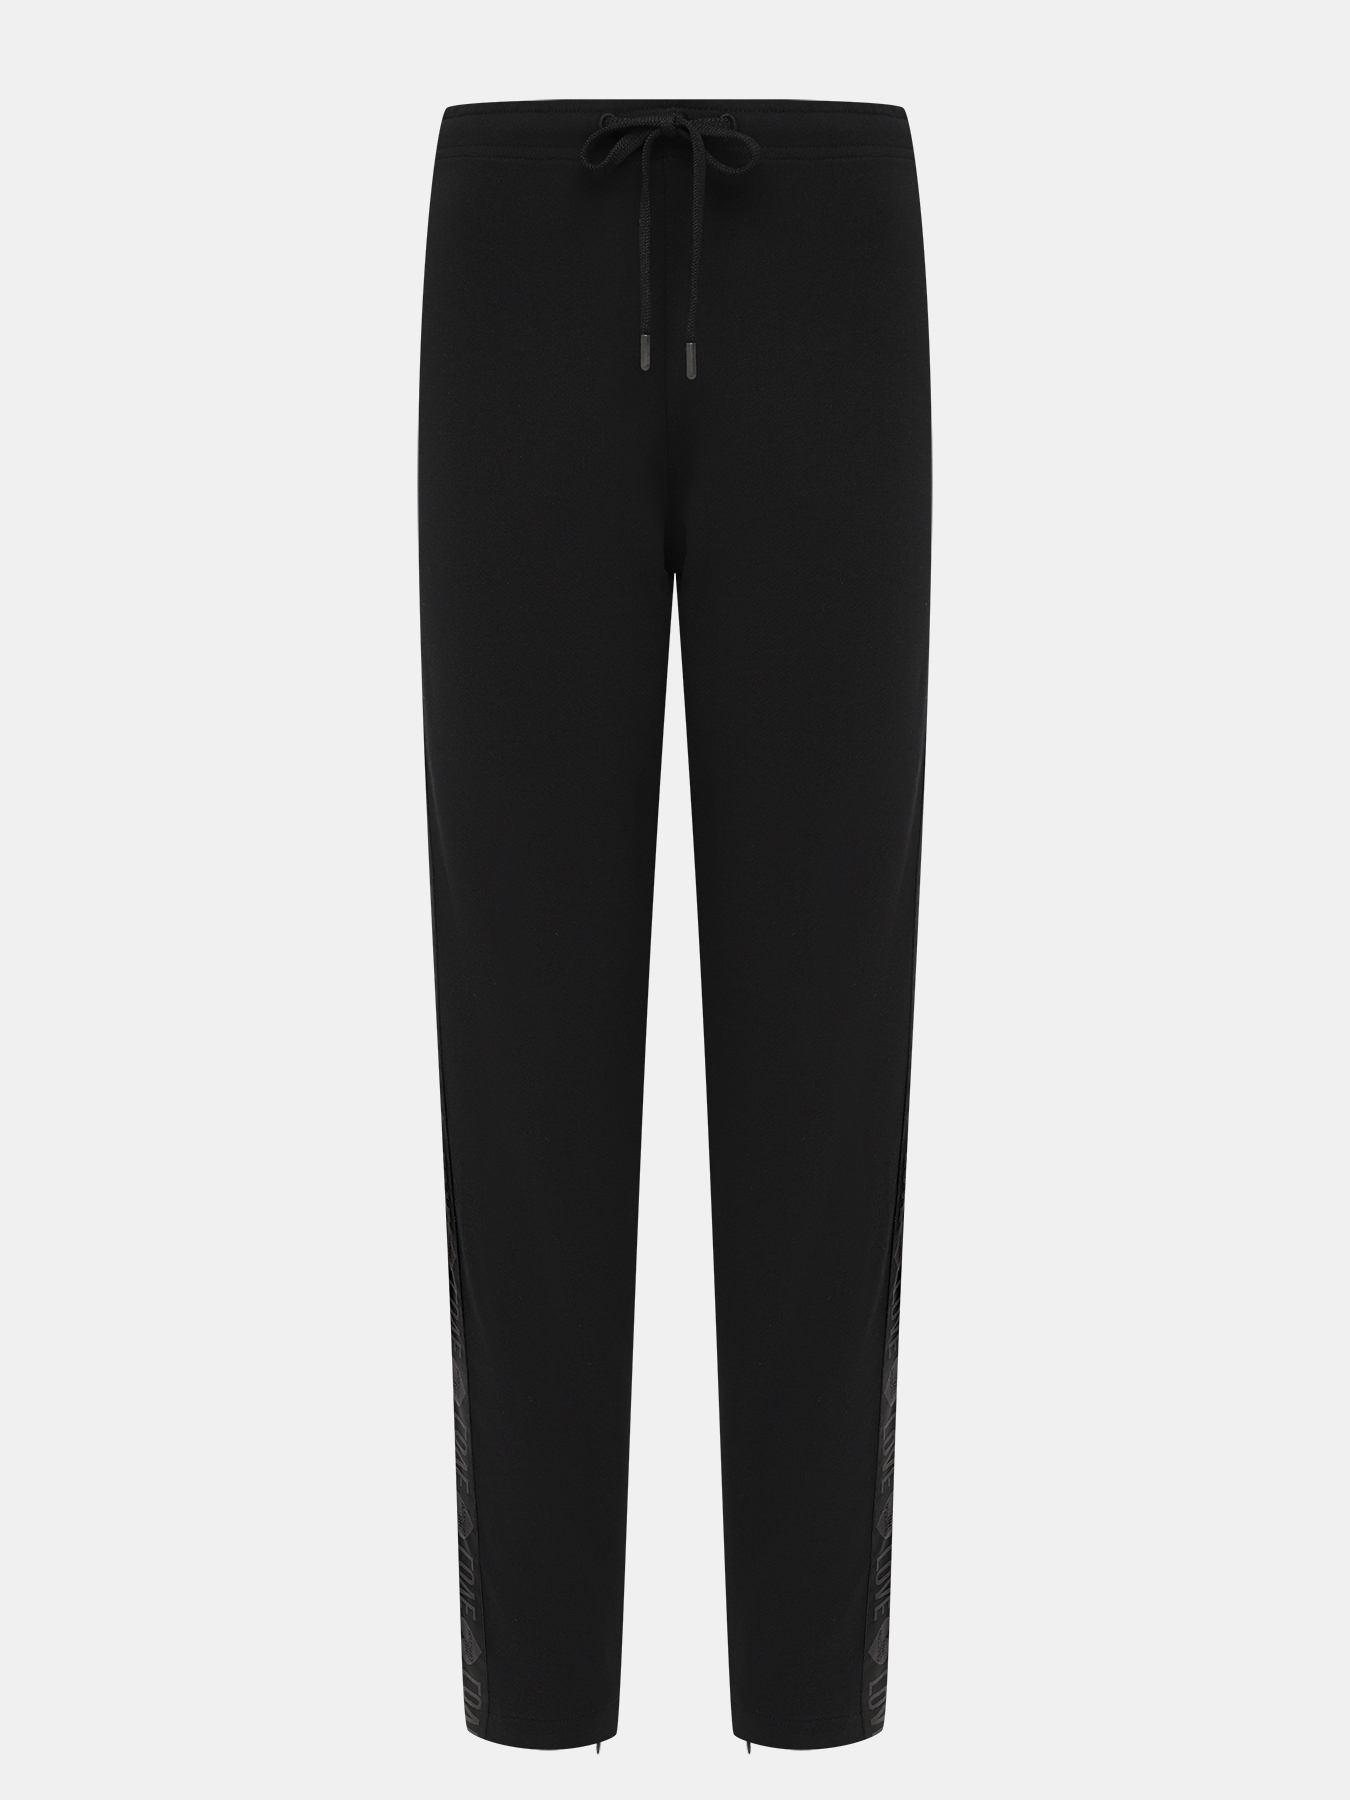 Спортивные брюки Love Moschino 394624-022, цвет черный, размер 44